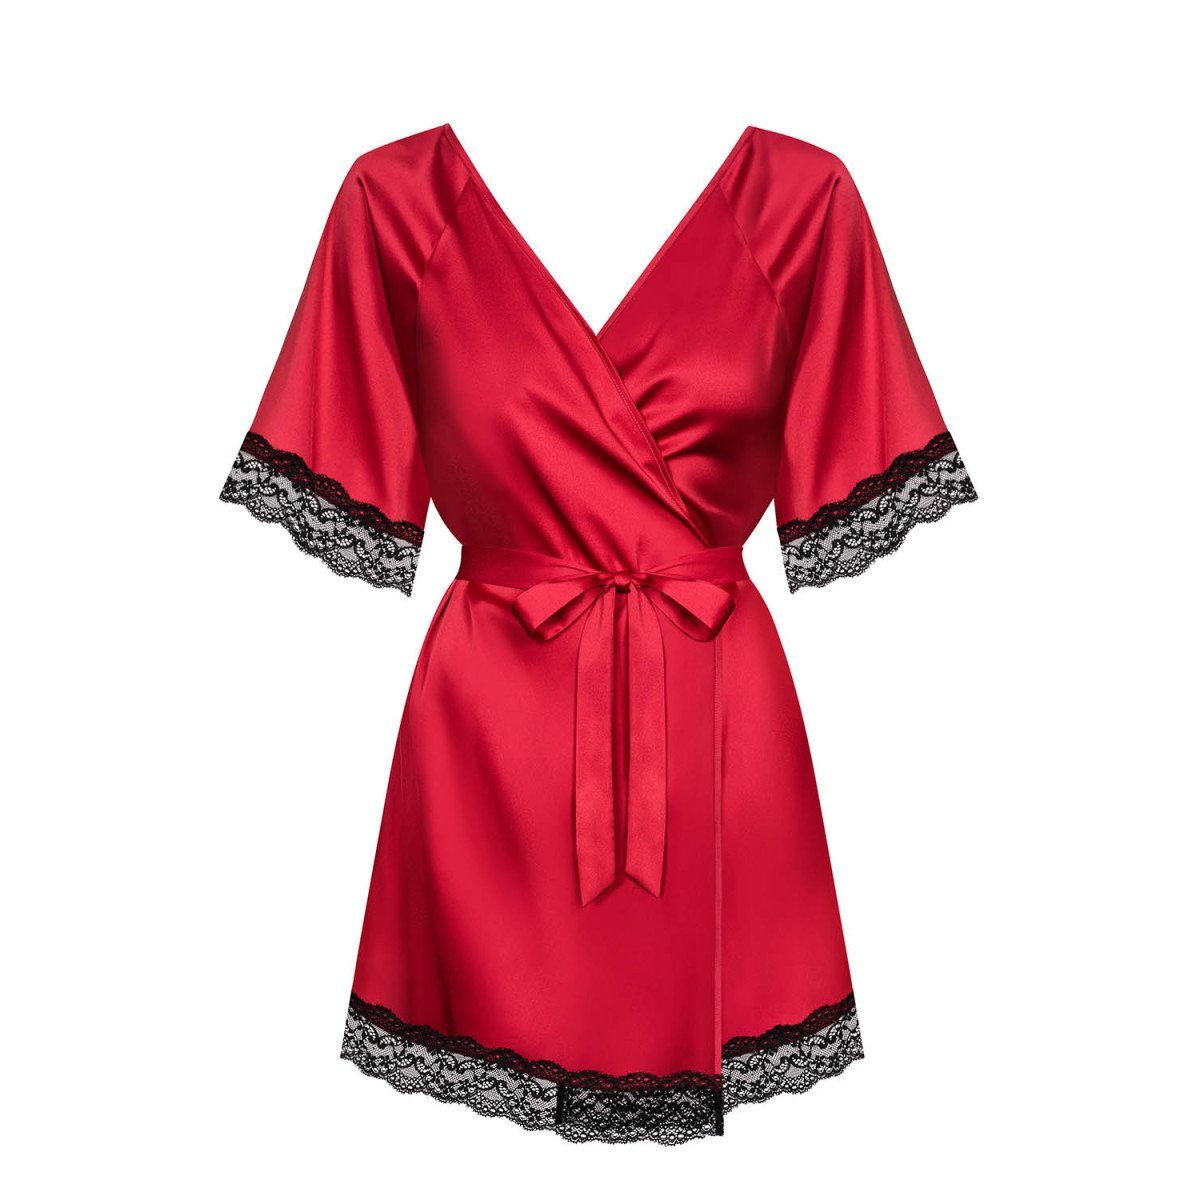 OB - (S/M,XXL) Obsessive Nachthemd Sensuelia red robe